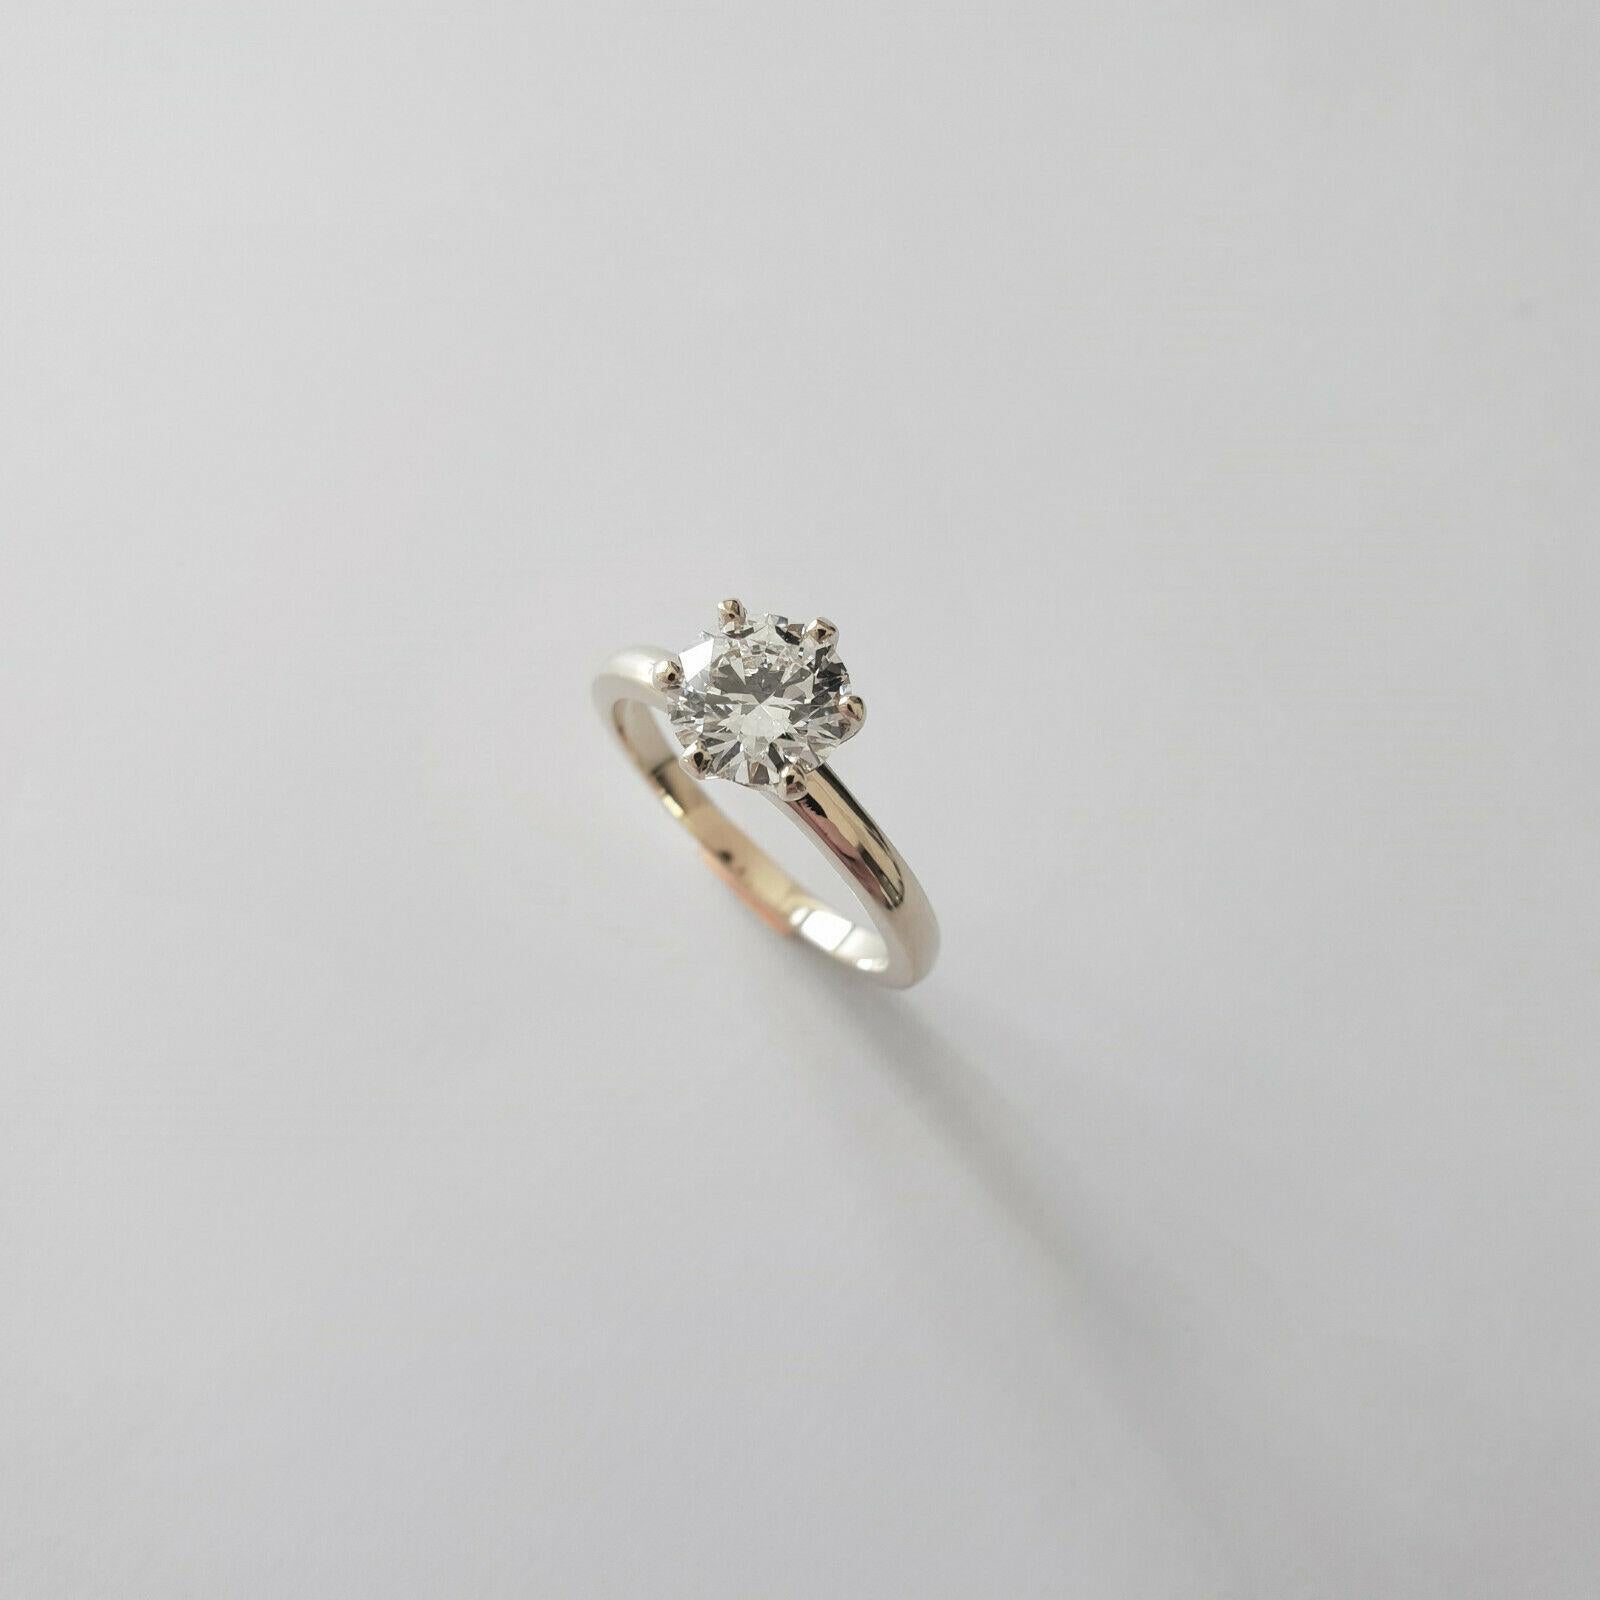 GIA-zertifizierter Diamant 0,5-0,55 F/SI1 Solitär-Ring 750 Gold in 6-Kreuz-Fassung

Solitär-Diamantring in Sechs-Zacken-Fassung. 
Hochglänzender, feiner Solitärring aus 18k Gold. Jede Ringgröße möglich. 

Größere Diamantgrößen sind auf Anfrage